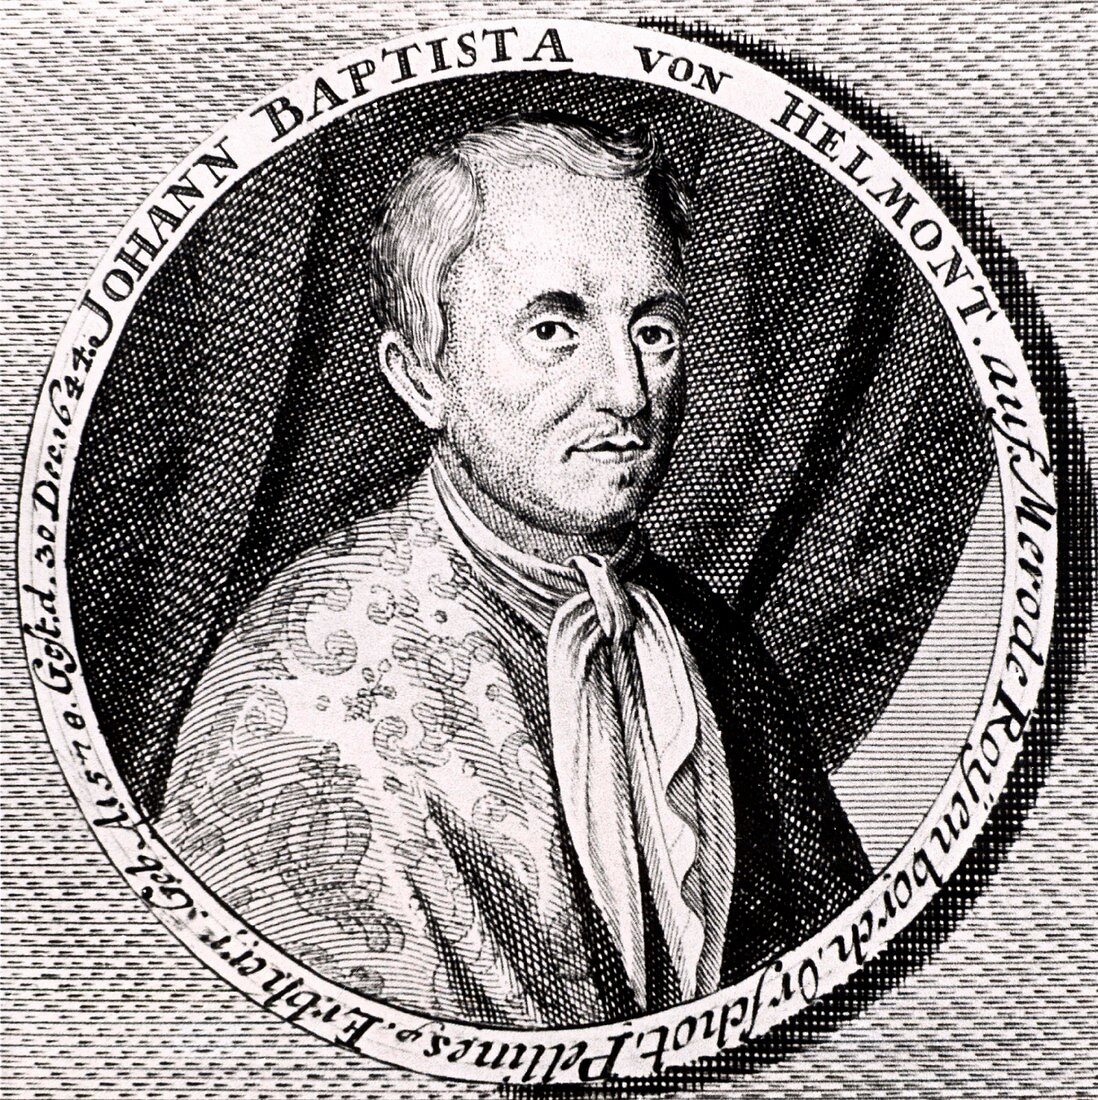 Jean Baptiste von Helmont,chemist